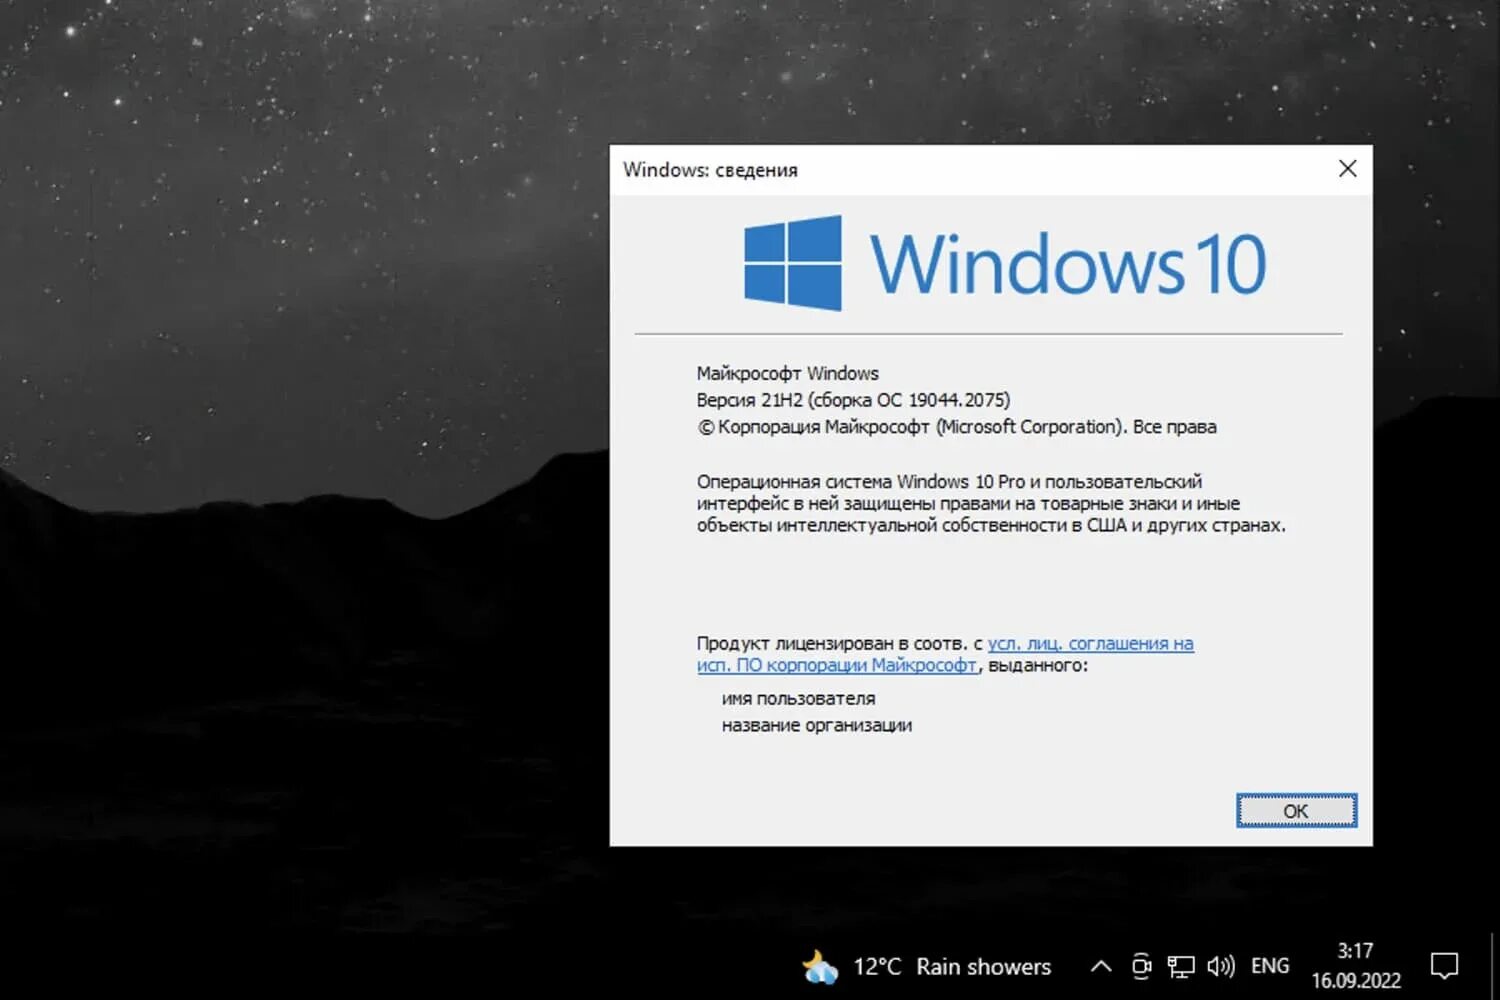 Версия 10 19. Виндовс 10 21h2. Windows 10, версия 21h1. Последняя версия виндовс 10. Обновление Windows.